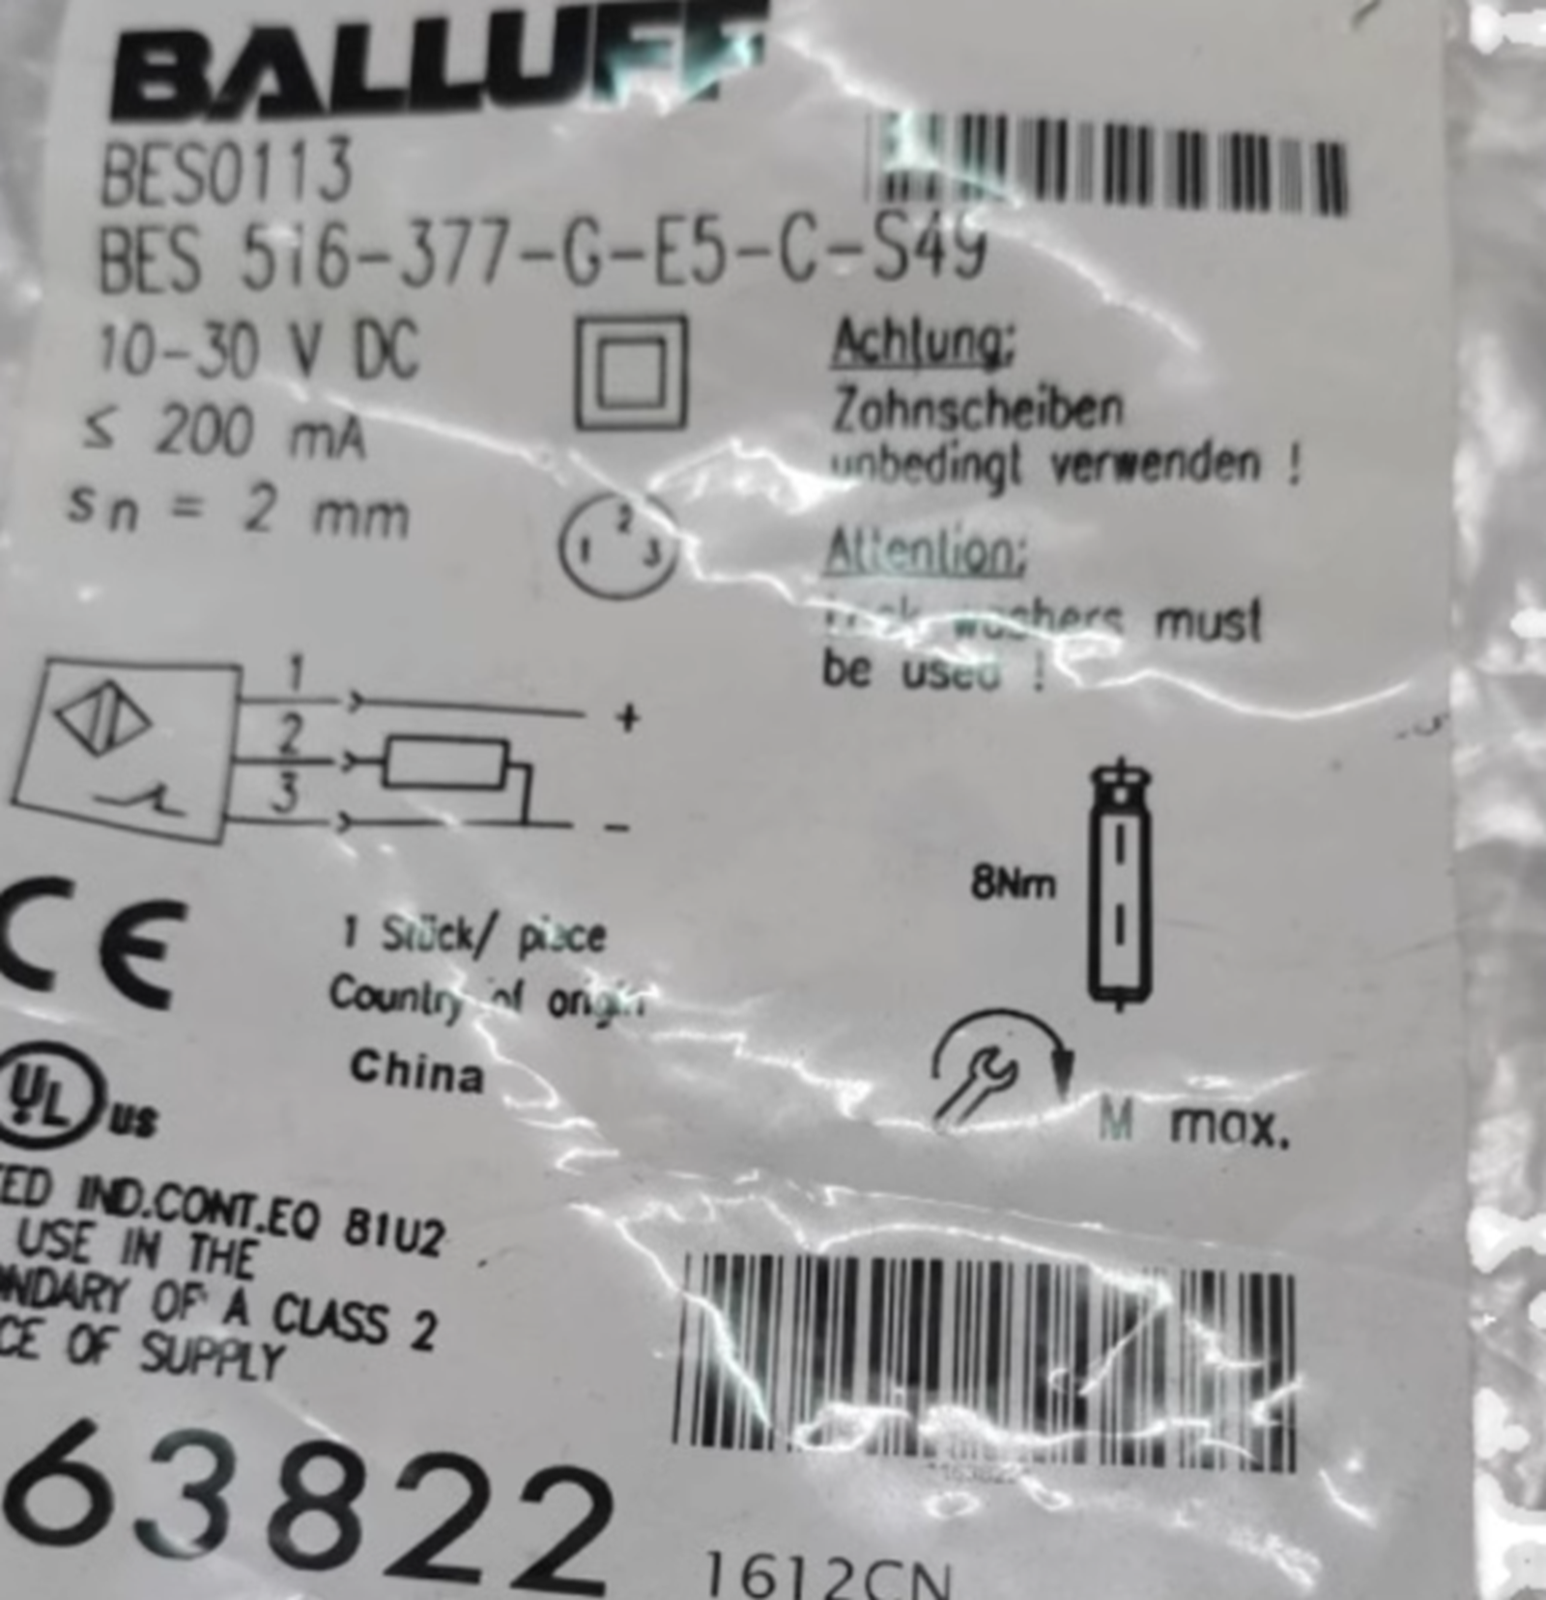 BALLUFF BES 516-377-G-E5-C-S49 Proximity Sensor